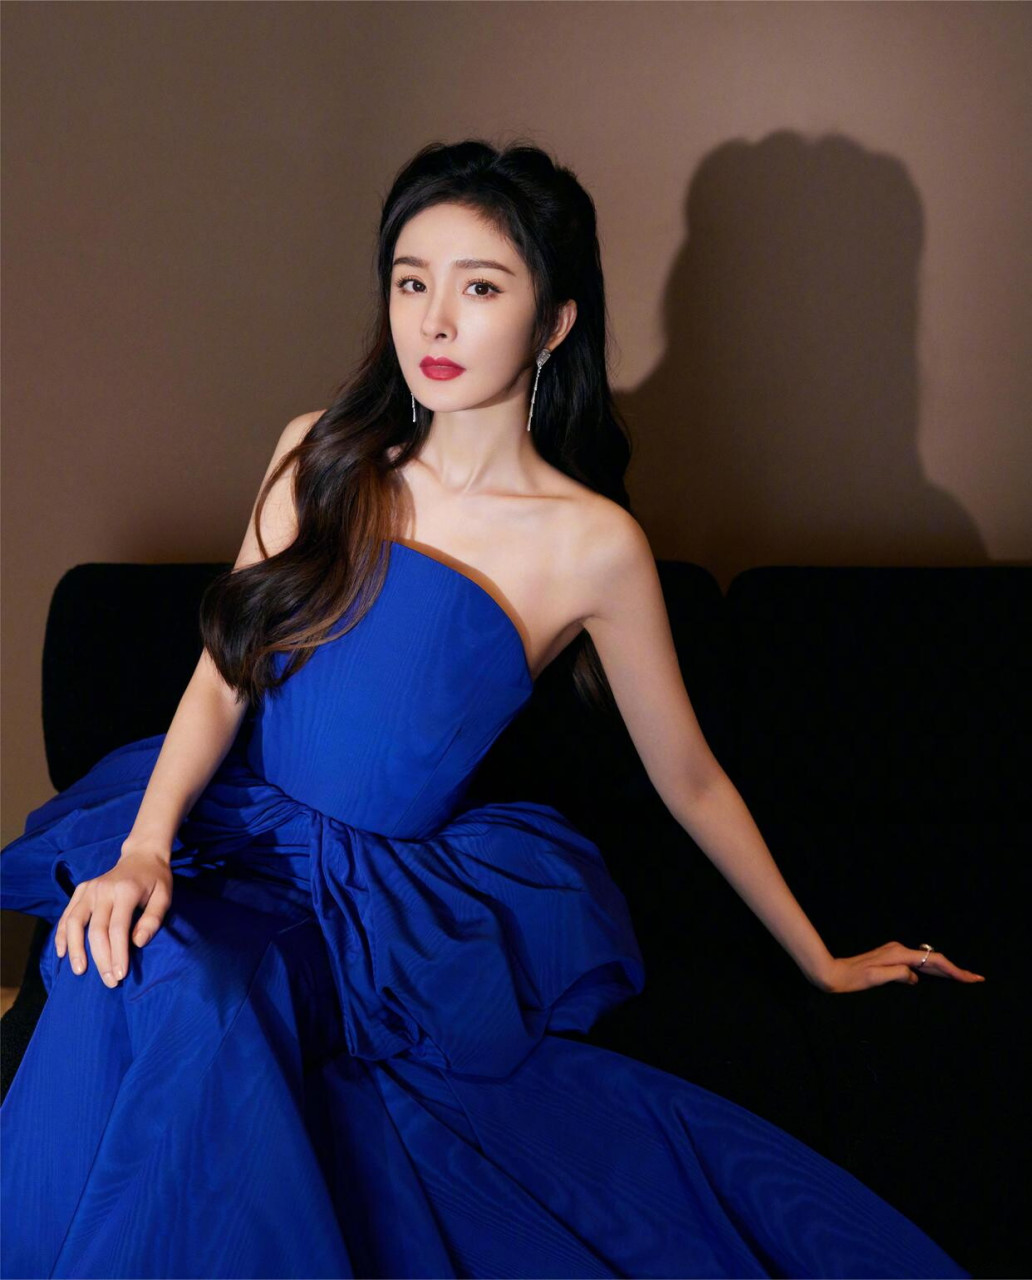 拍摄唯美写真的杨幂身穿蓝色抹胸连衣裙,展现出一种高级复古感,优雅